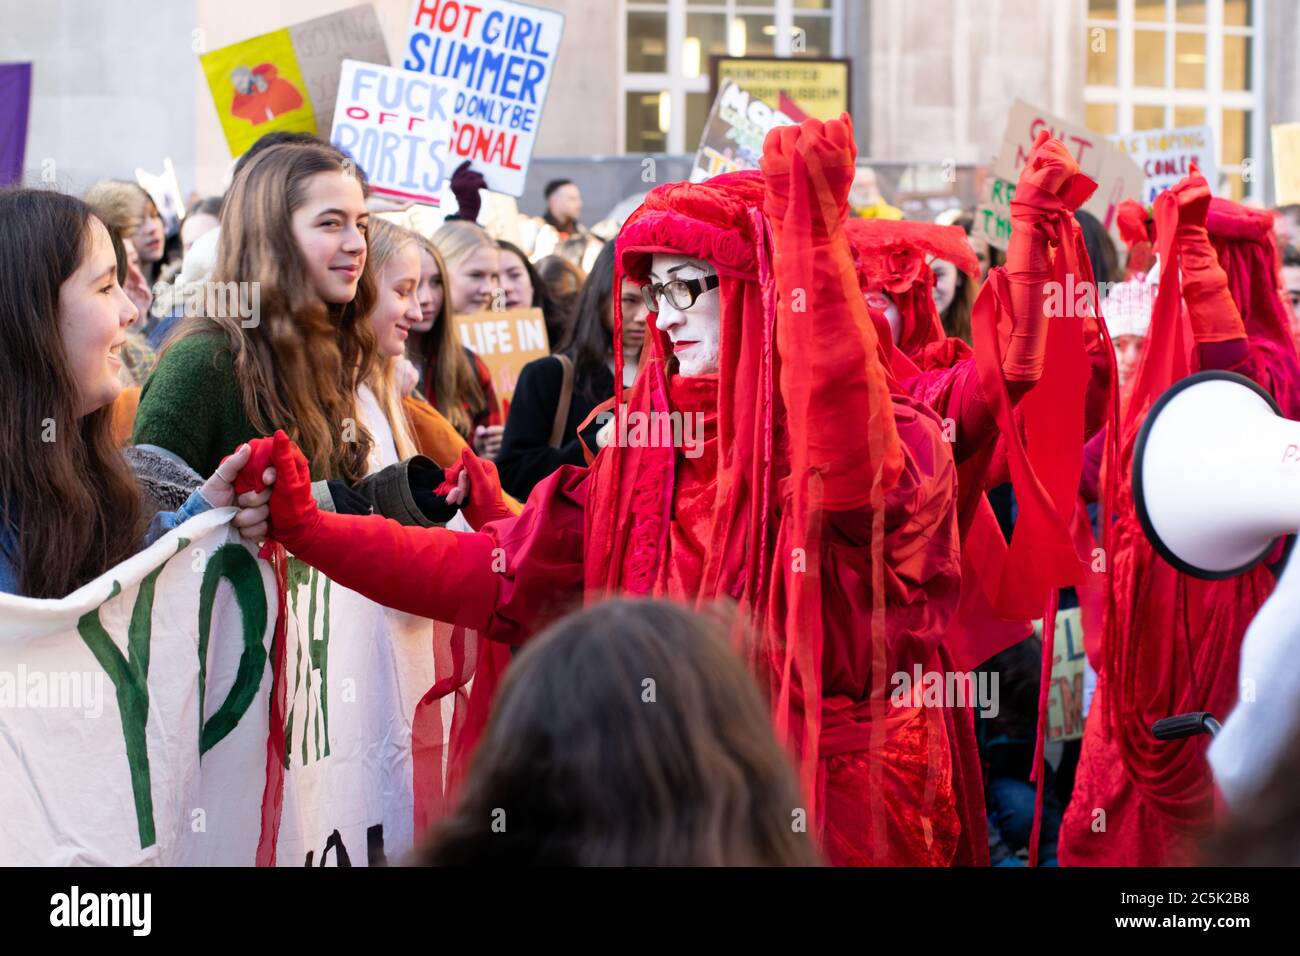 Ataque climático global en la Plaza de San Pedro, Manchester, Reino Unido. Extinción rebelión los rebeldes rojos de circo invisibles se mantienen en manos de los manifestantes mientras caminan Foto de stock